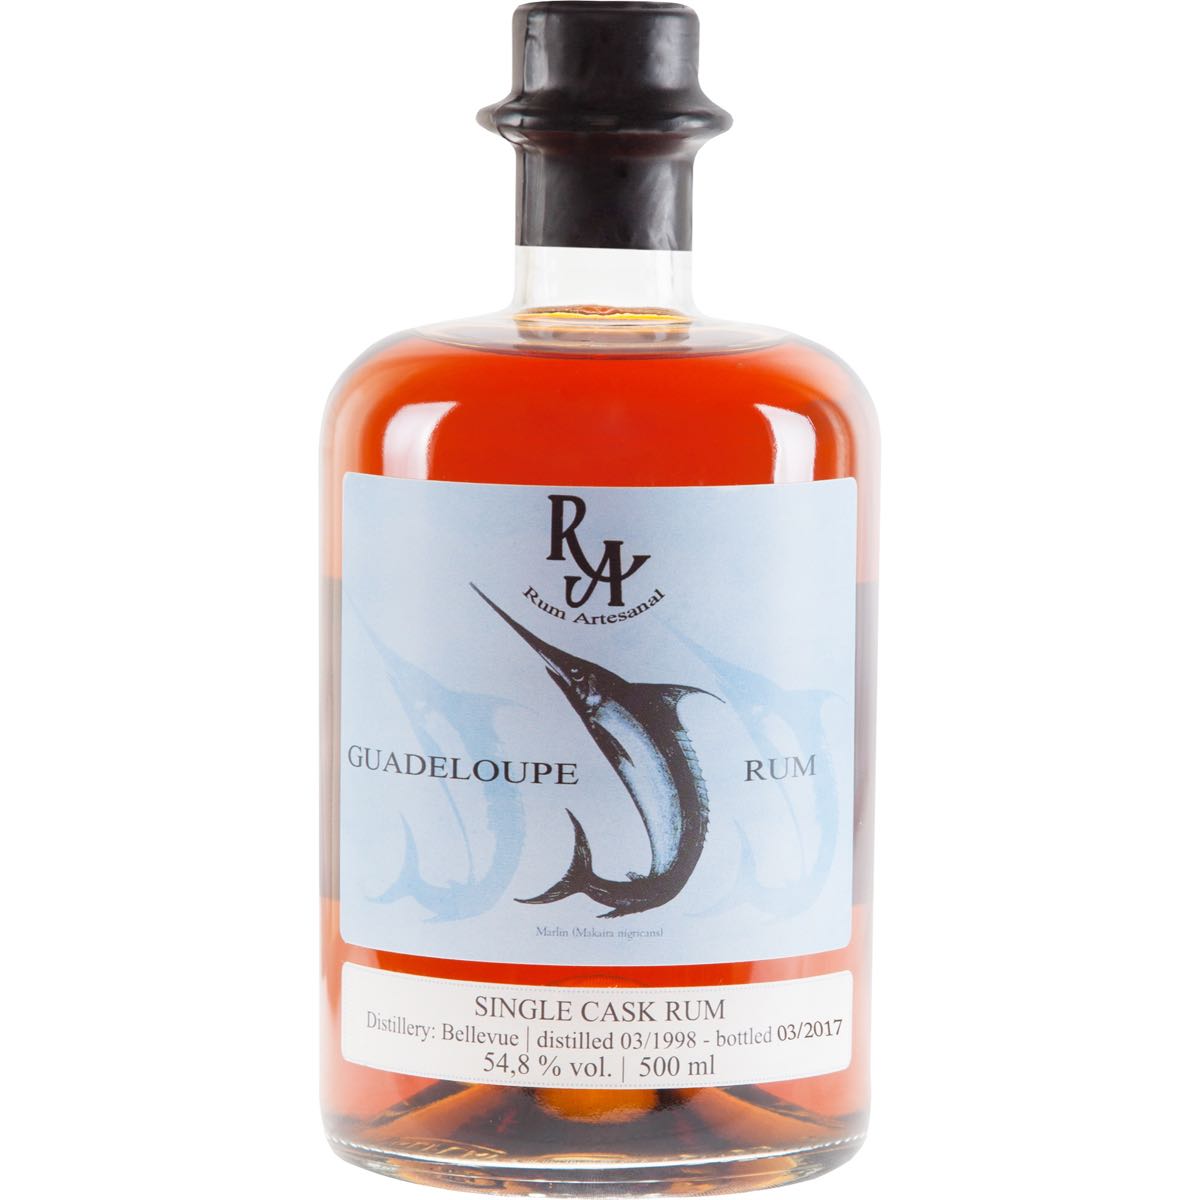 Bottle image of Rum Artesanal Guadeloupe Rum